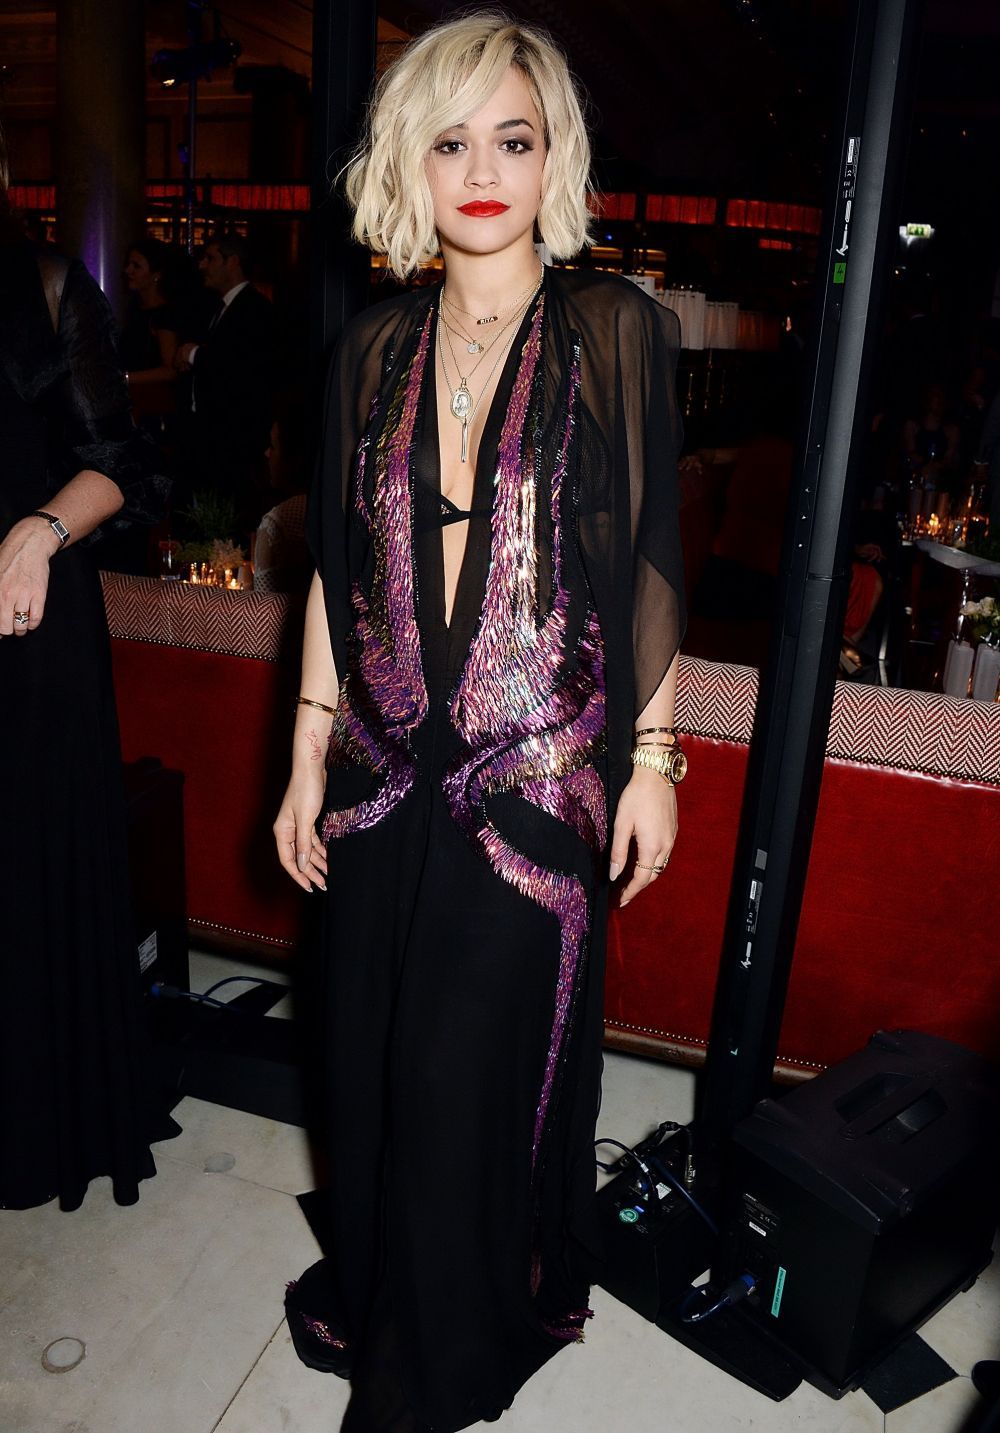 Schimbare radicala de look: a fost confundata cu Rita Ora dupa ce s-a pozat blonda. Cum arata acum Kylie Jenner